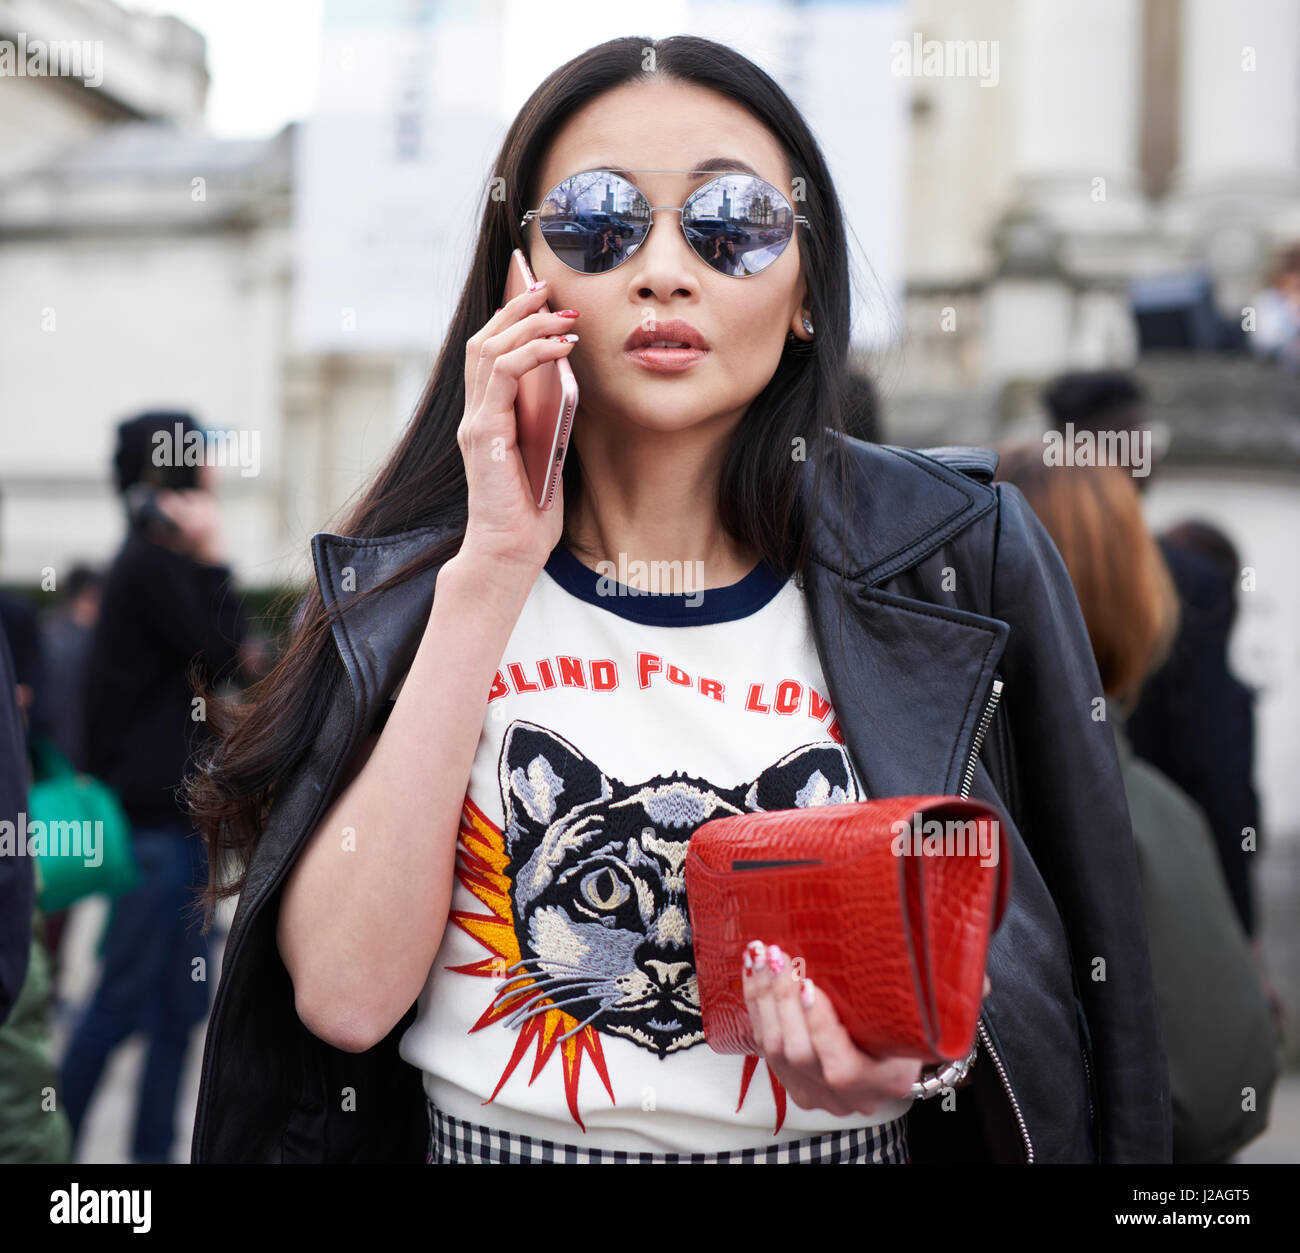 Gucci t shirt Banque de photographies et d'images à haute résolution - Alamy